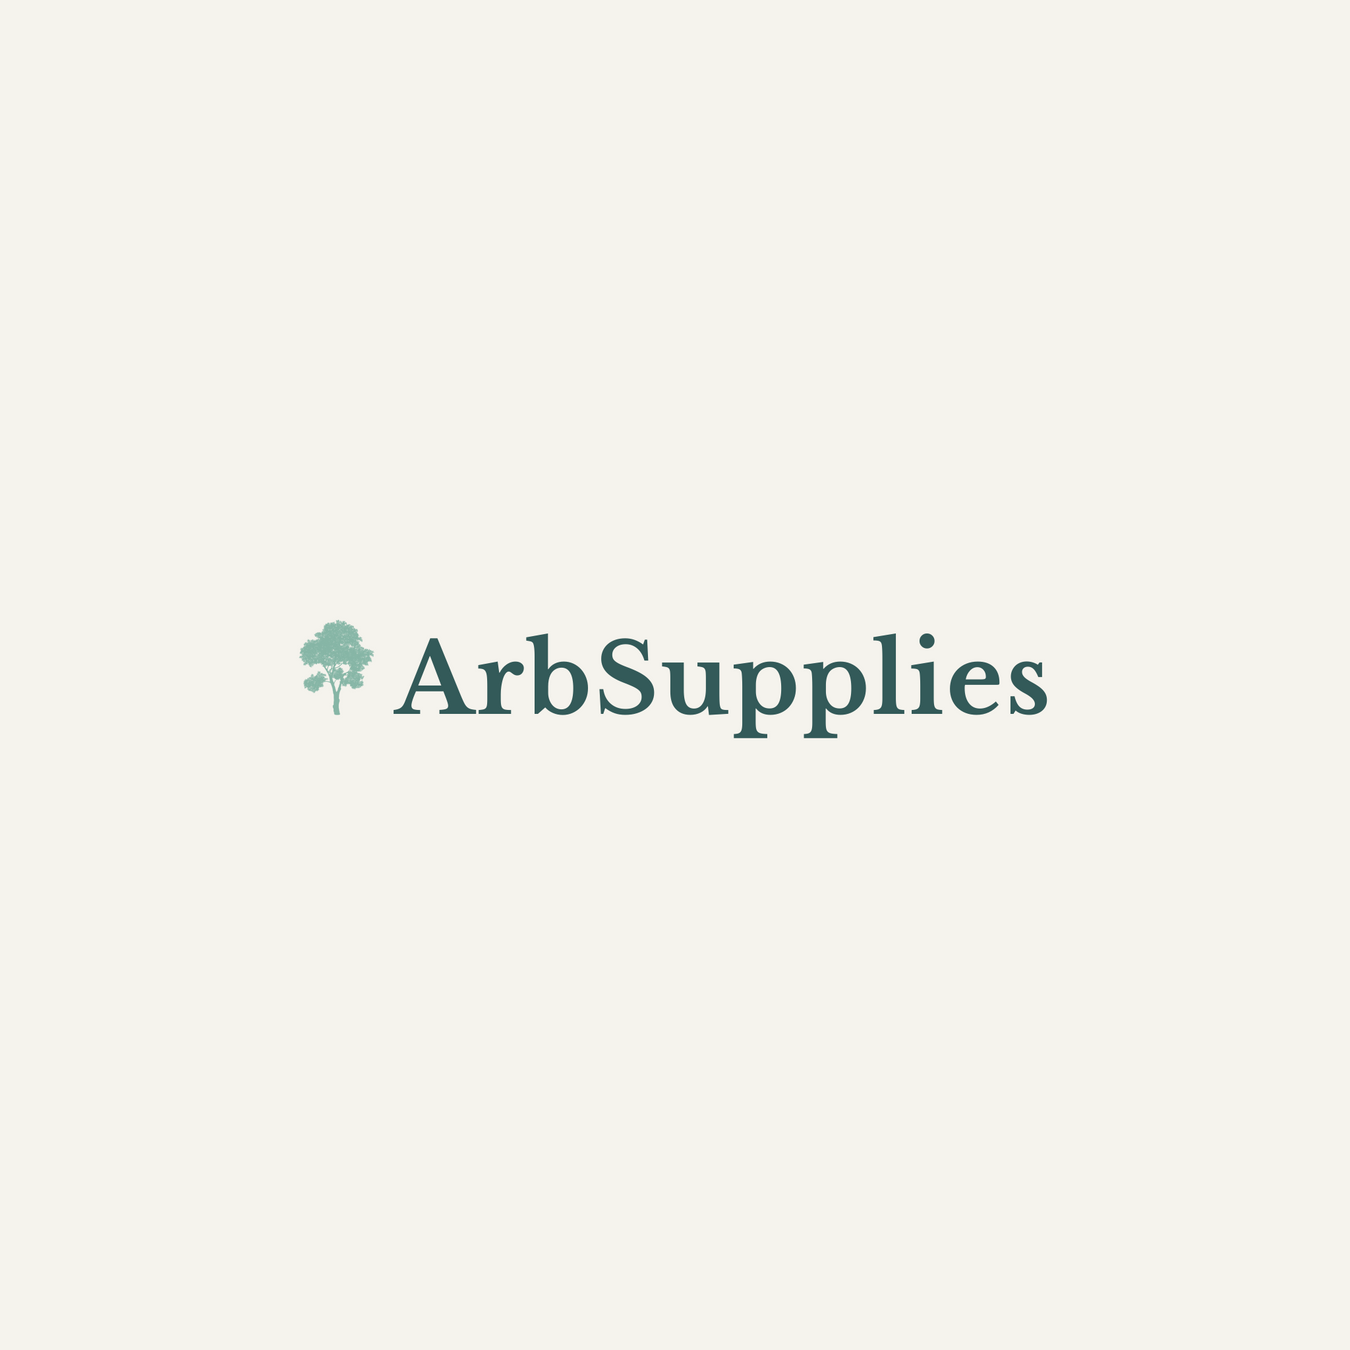 Arb Supplies